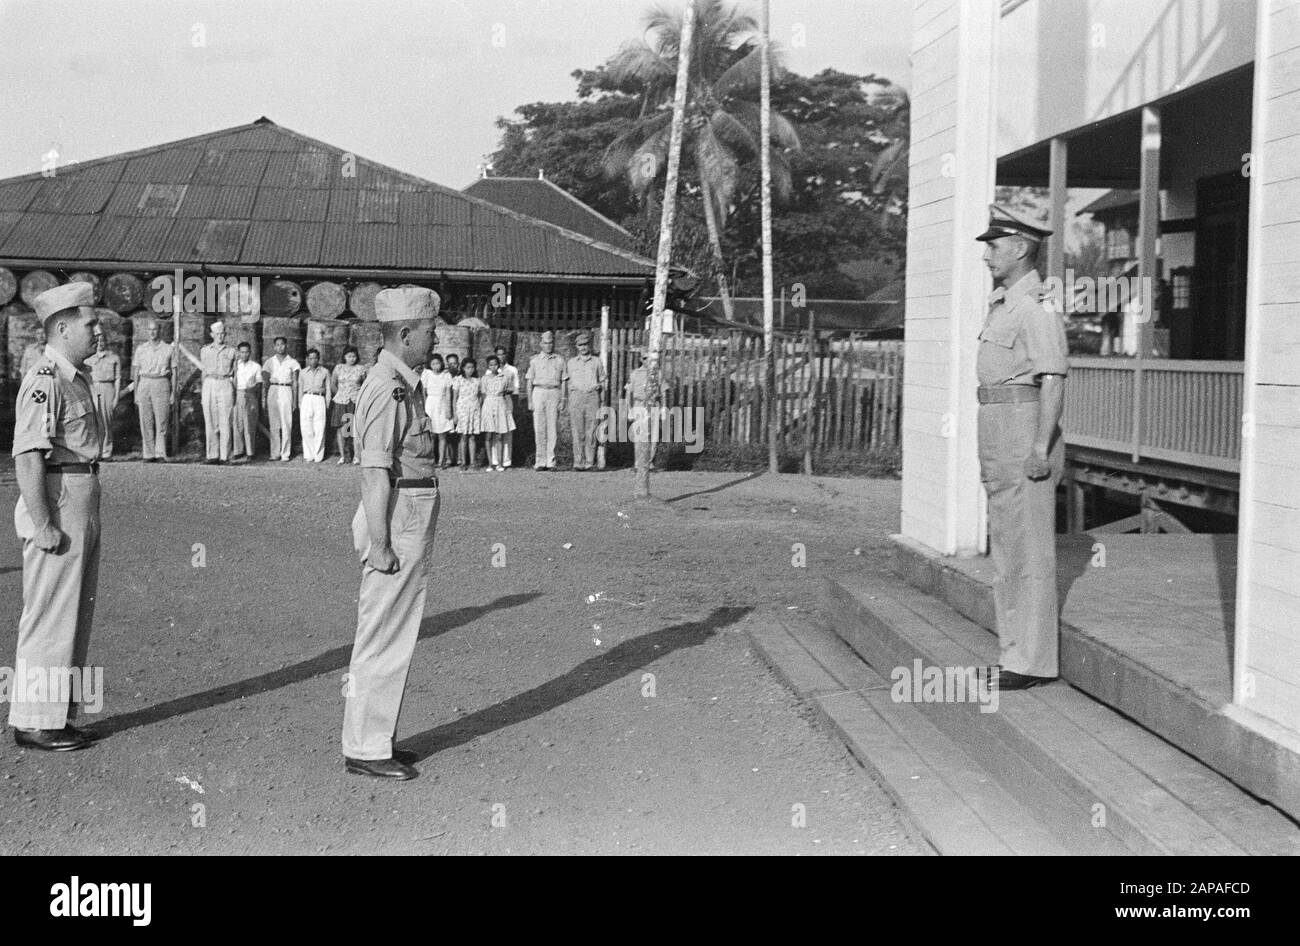 Bandjermasin, addio al Comandante J.H.M.U.L.E. OHL ha ceduto il comando territoriale di Z.O. Da Borneo a Lt.kol. C.A.C. Dufour. Durante il trasferimento. Annotazione: Left Ohl, Right Dufour Data: 7 September 1948 Location: Bandjermasin, Borneo, Indonesia, Dutch East Indies Foto Stock